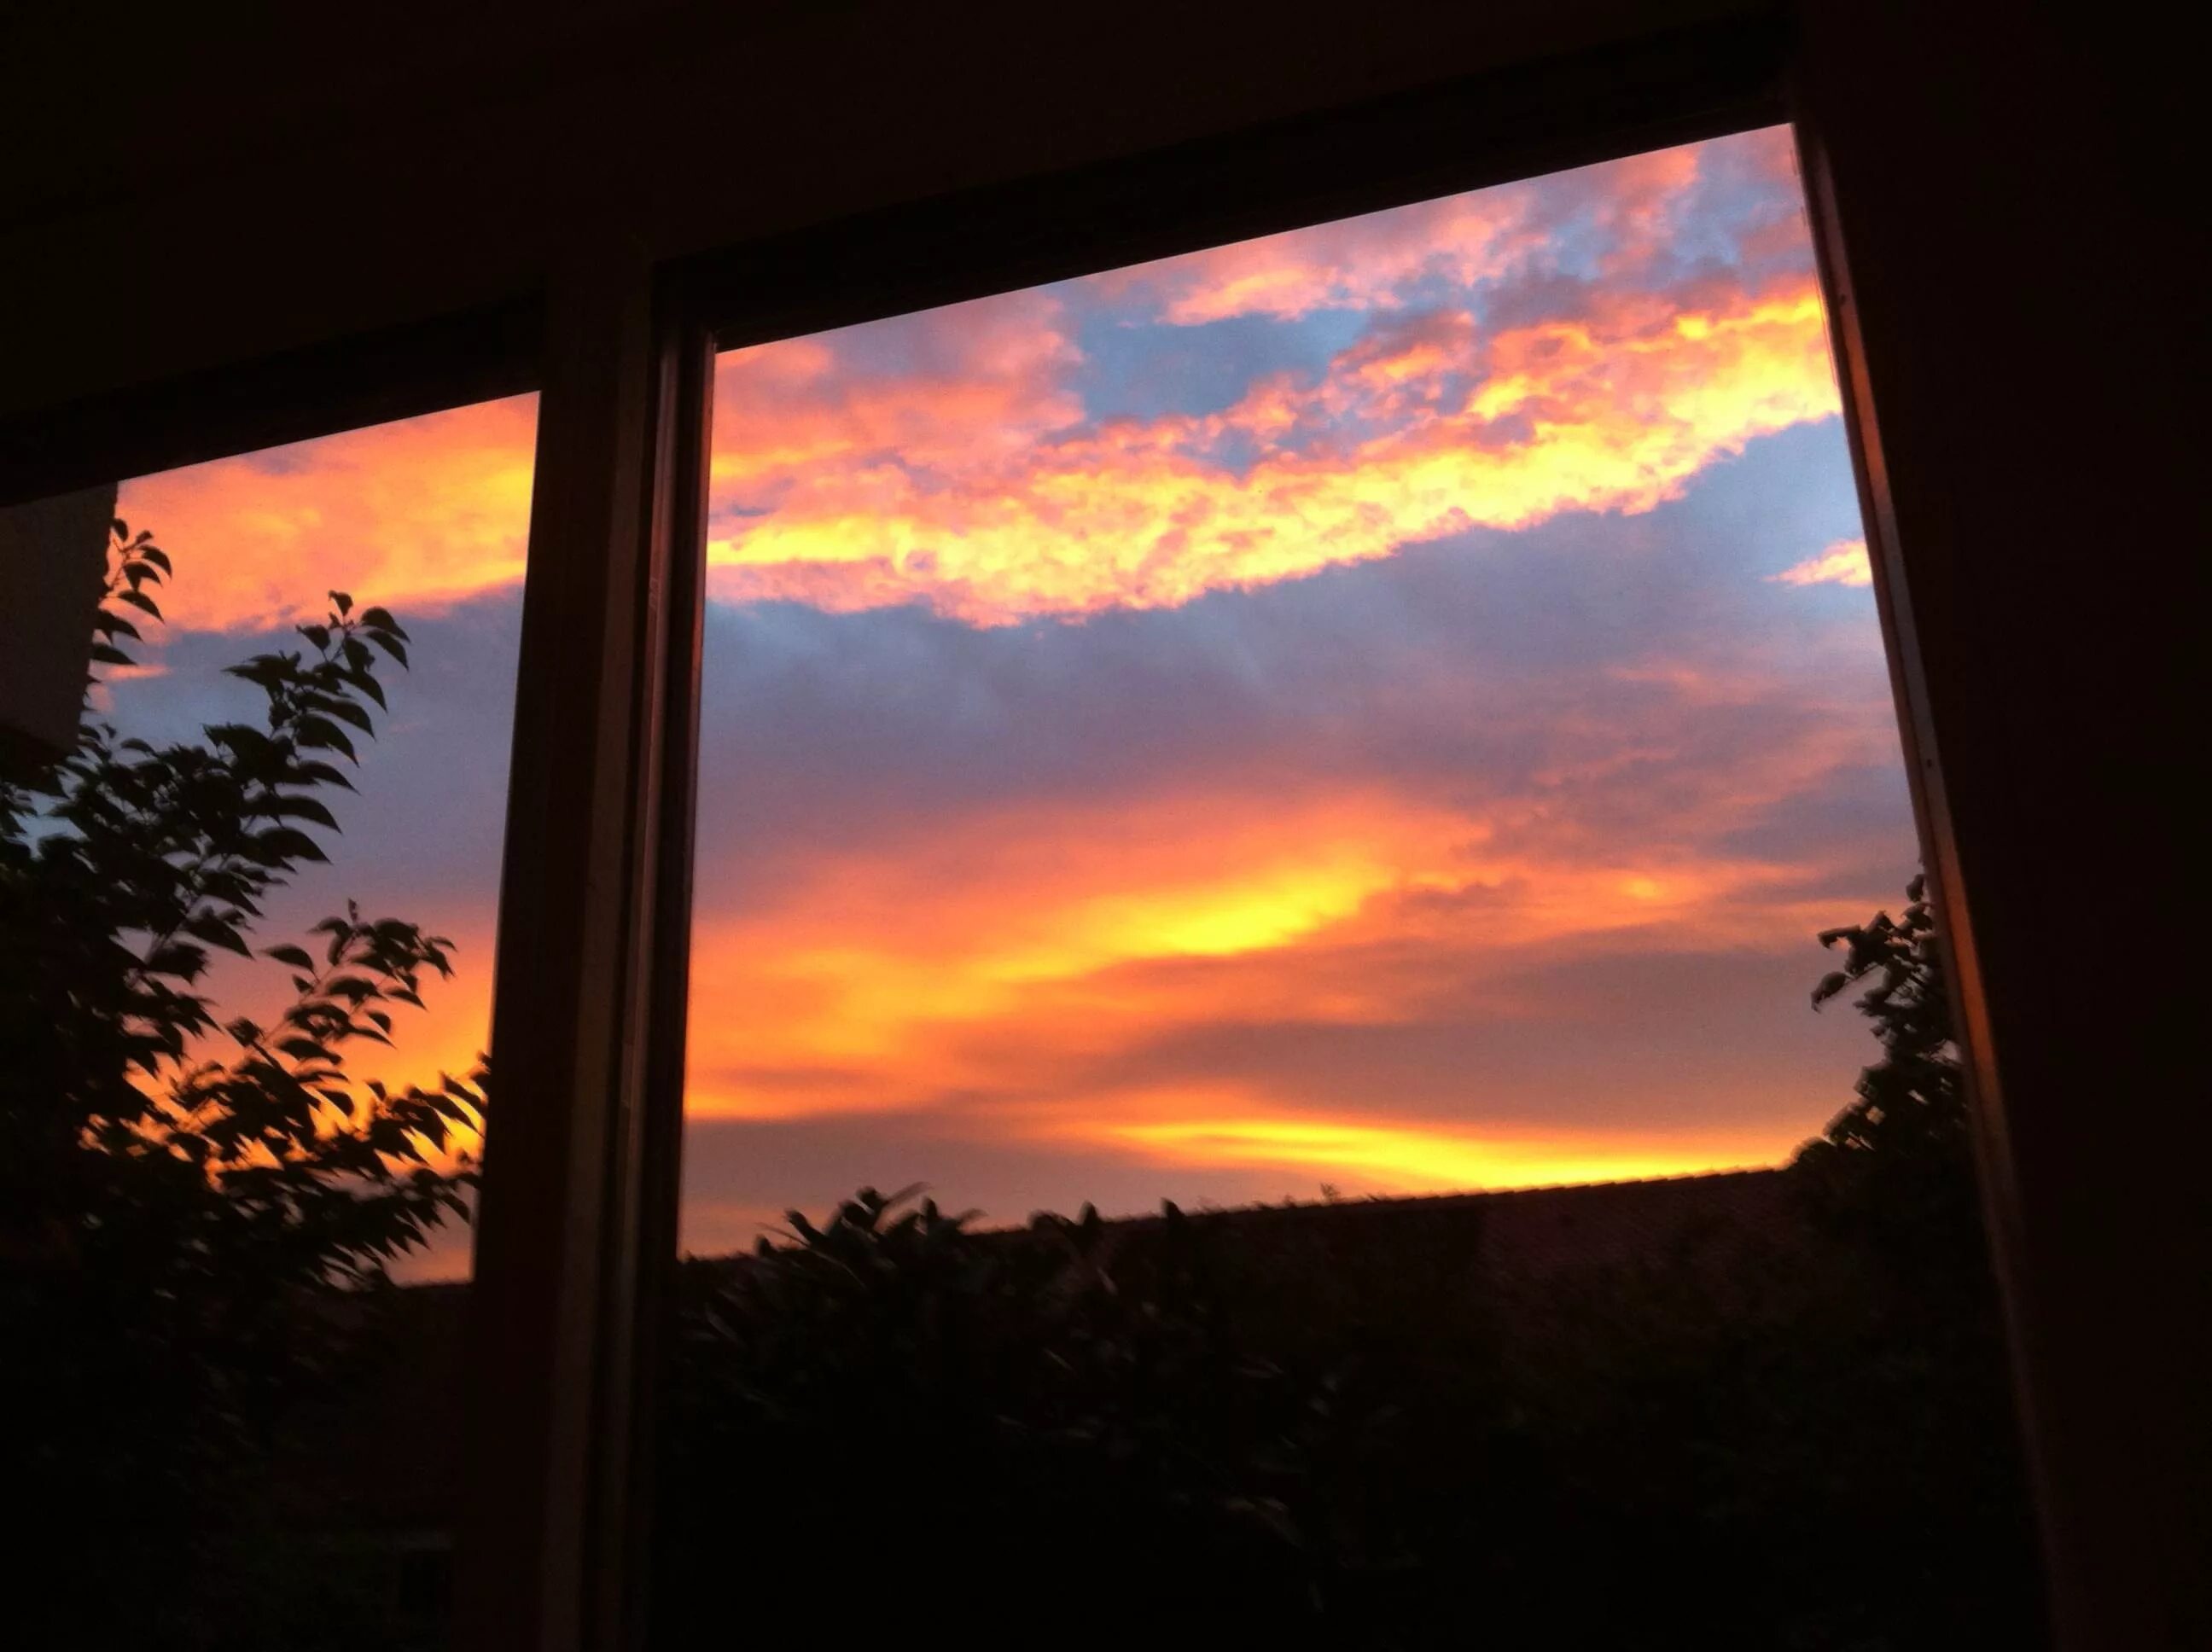 В окнах отражается солнце. Закат в окне. Отражение заката в окнах. Рассвет в окне. Красивый закат в окне.